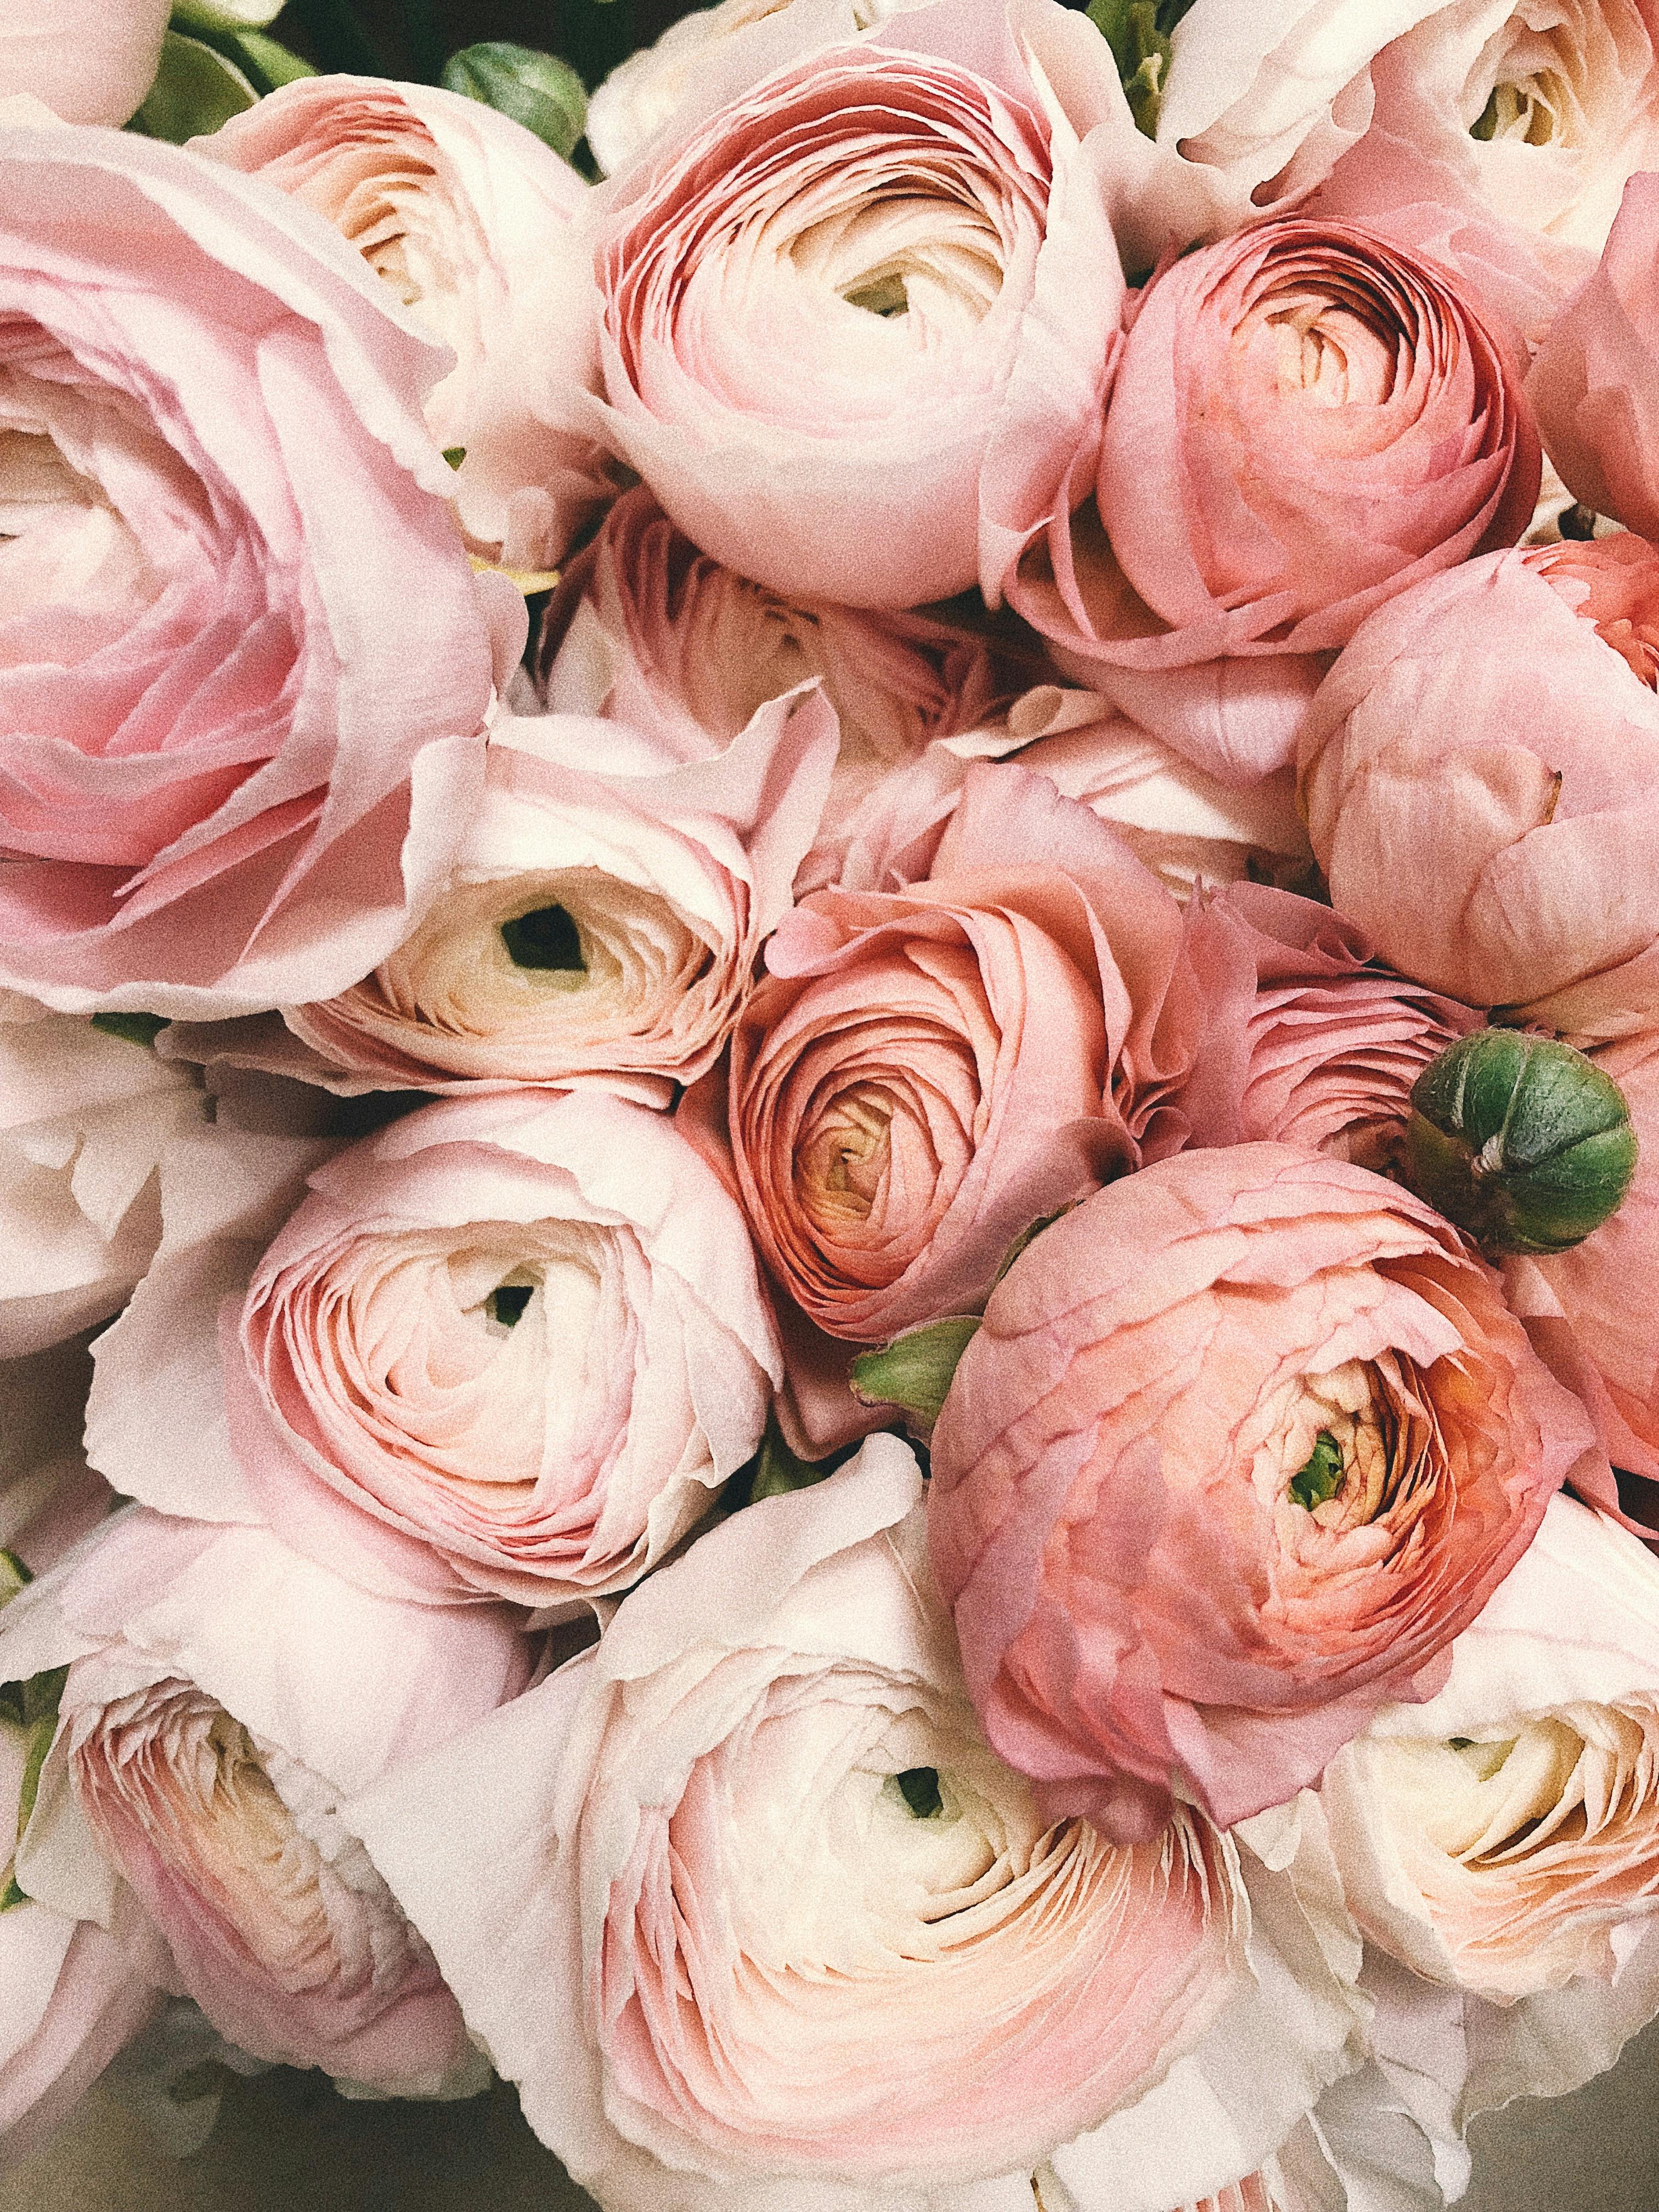 Hoa hồng nước sơn mài có phong cách riêng biệt và độc đáo. Với sự kết hợp của màu sắc và ánh sáng, hoa hồng nước sơn mài mang đến sự đẹp lạ và huyền bí. Hãy chiêm ngưỡng những bức tranh hoa nước sơn mài đẹp nhất trên màn hình của bạn.